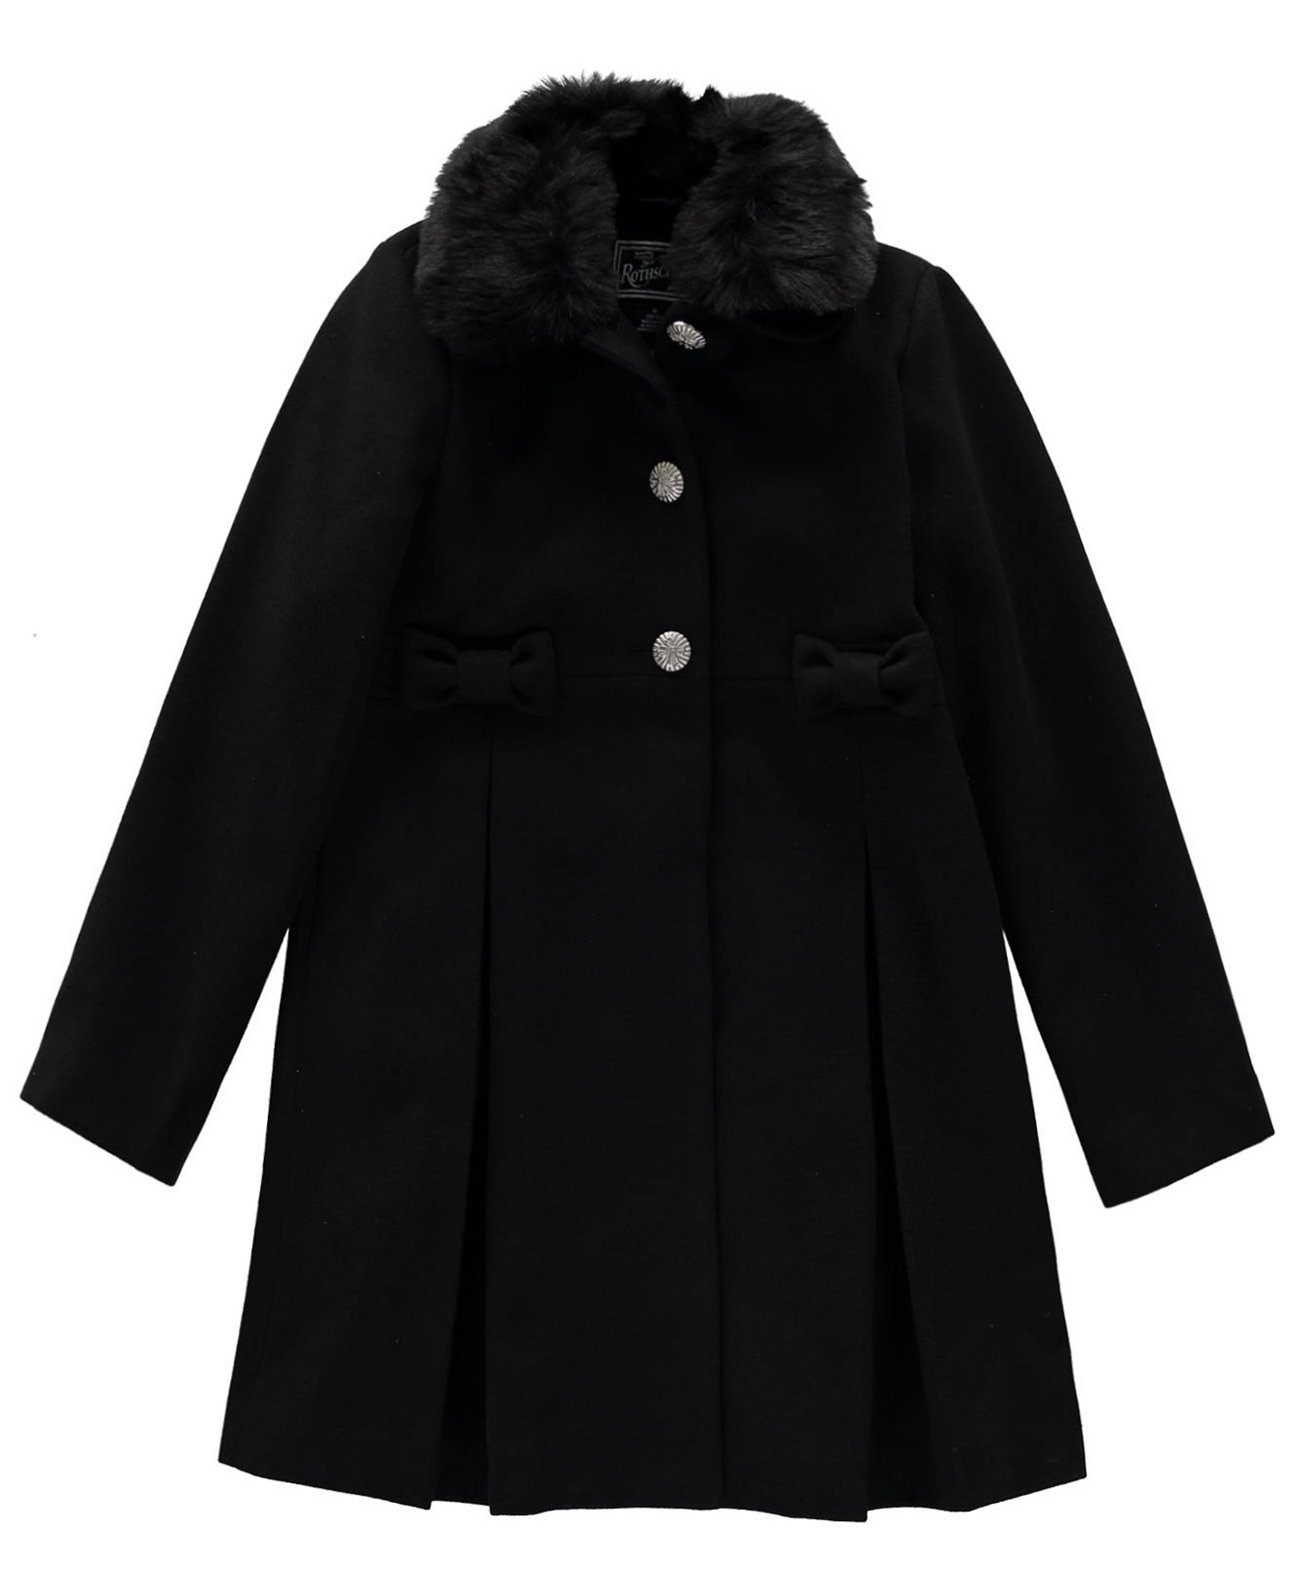 Пальто для девочек с бантом S Rothschild & CO